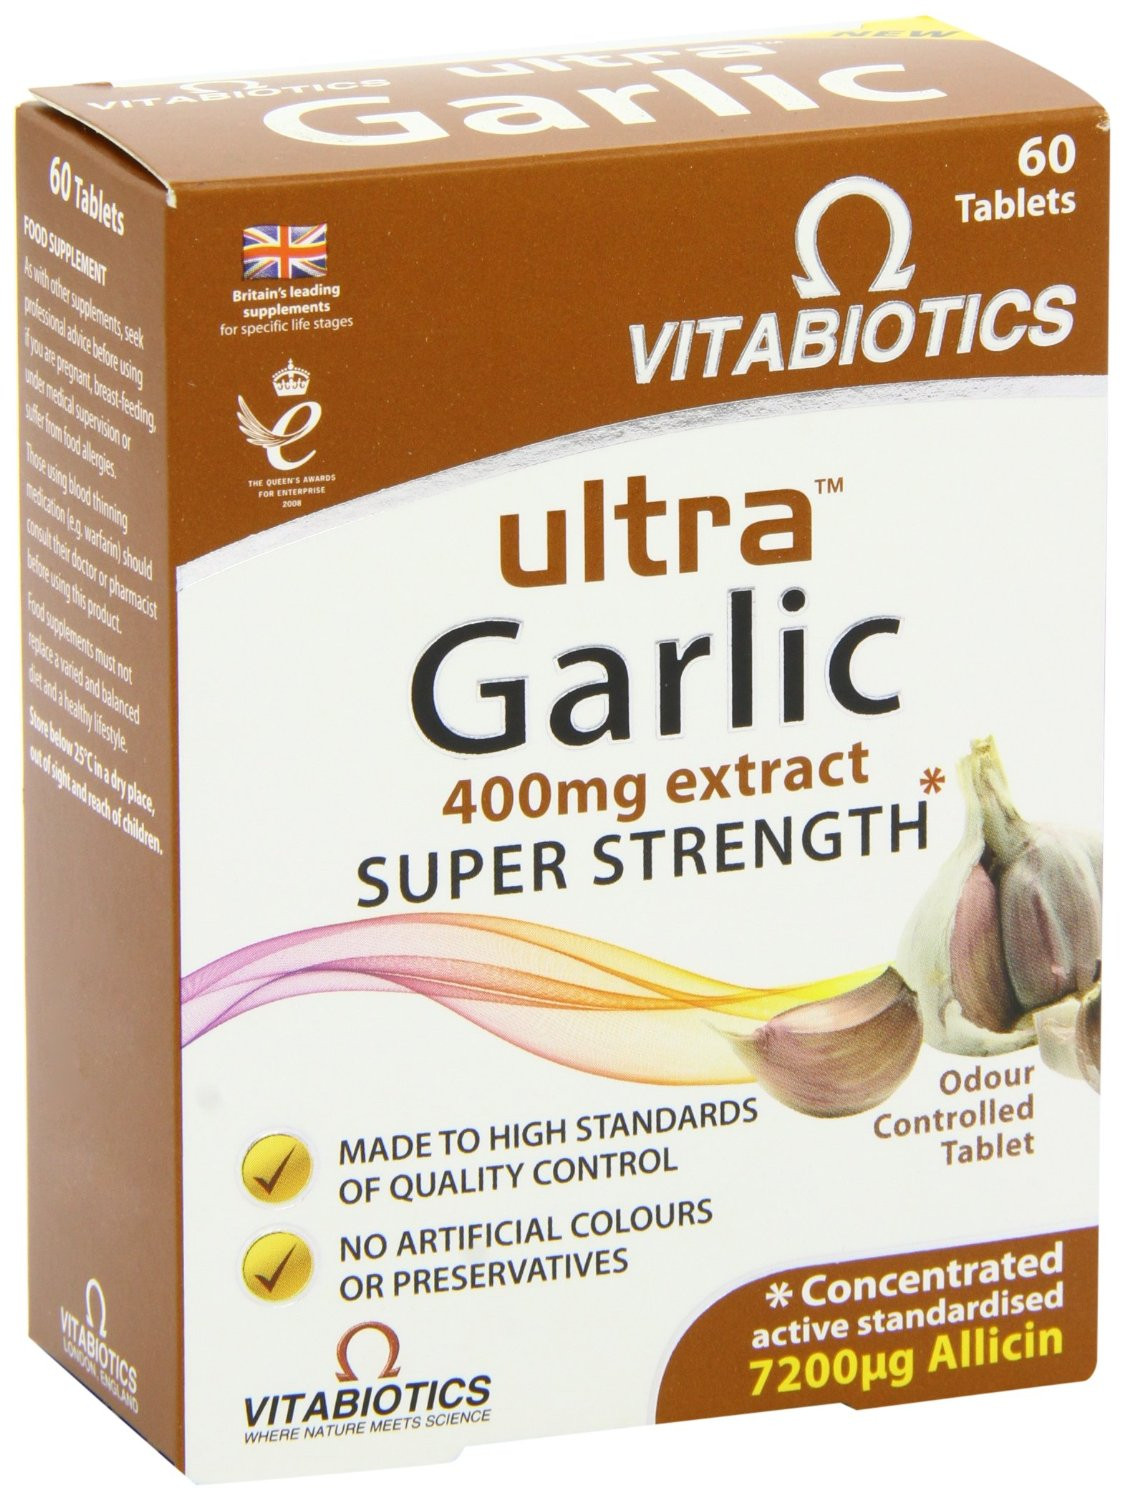 Vitabiotics Ultra Garlic Tablets - 60 Tablets